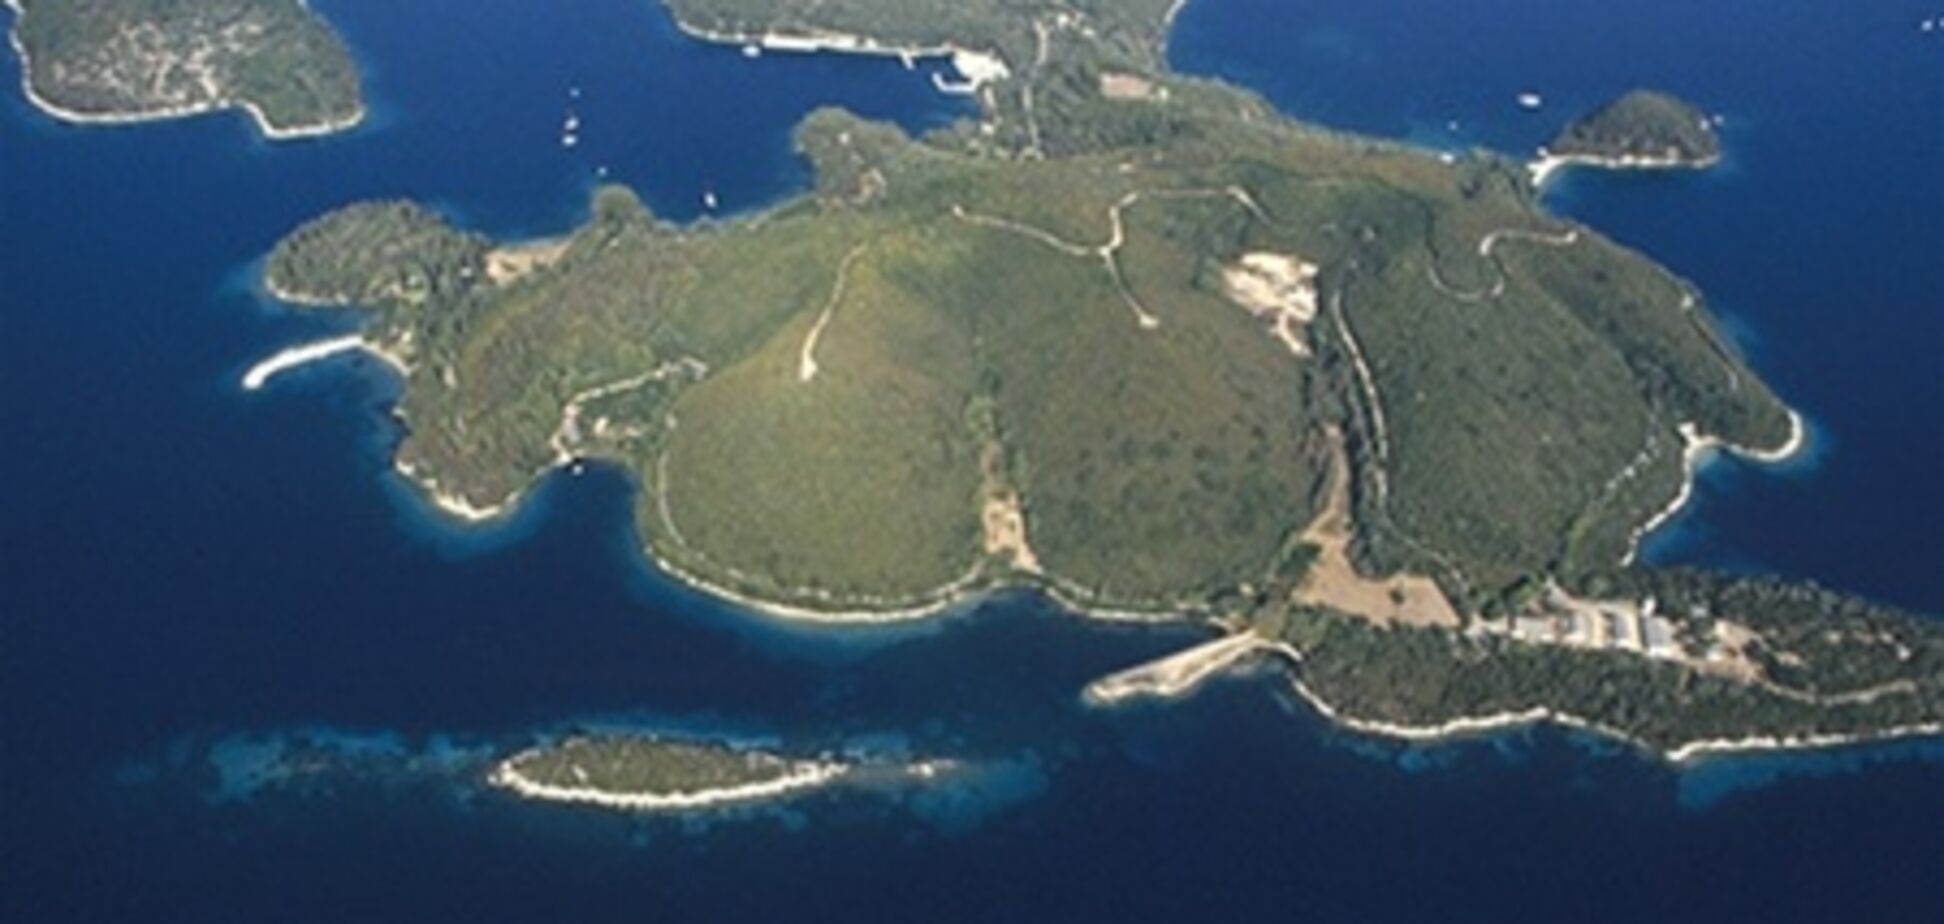 Миллиардер из РФ купил остров Онассиса за 100 млн евро